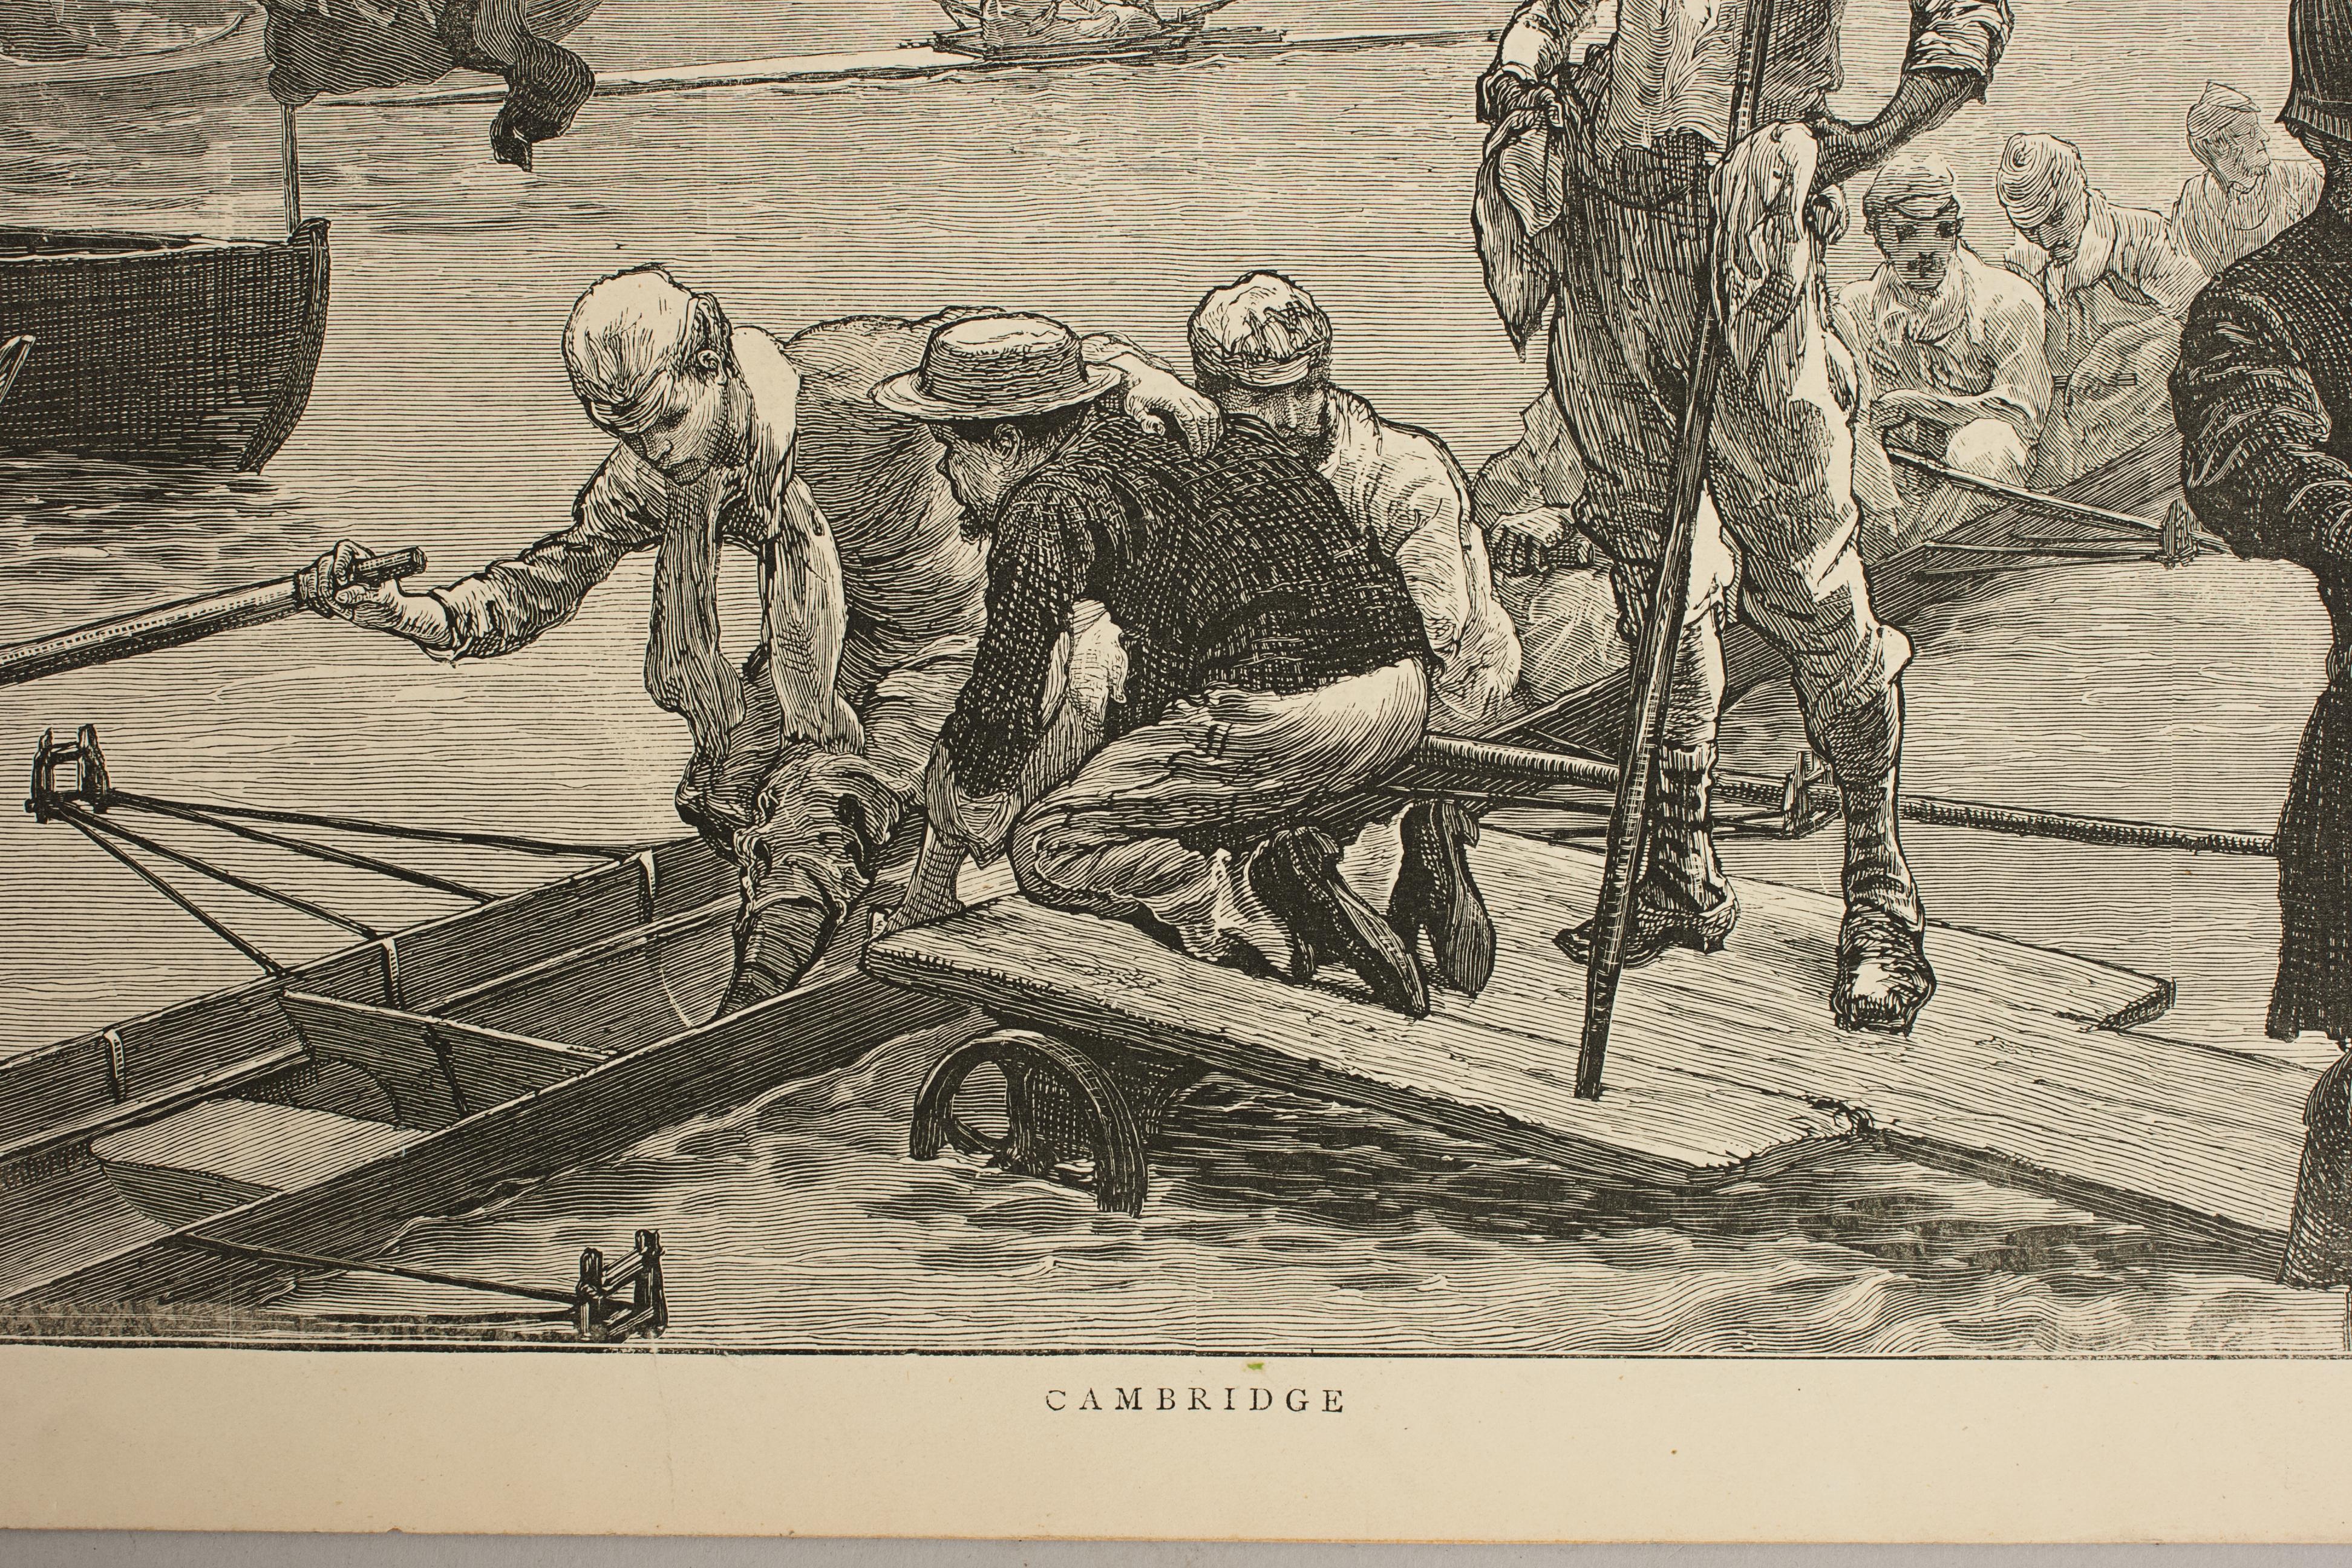 Cambridge bereitet sich auf das Bootsrennen vor.
Eine wunderbare, stimmungsvolle Ruderlithografie, die zeigt, wie sich die Cambridge-Crew in ein Ruderboot setzt und sich auf ein Rennen vorbereitet. Fünf Besatzungsmitglieder sitzen bereits, ein